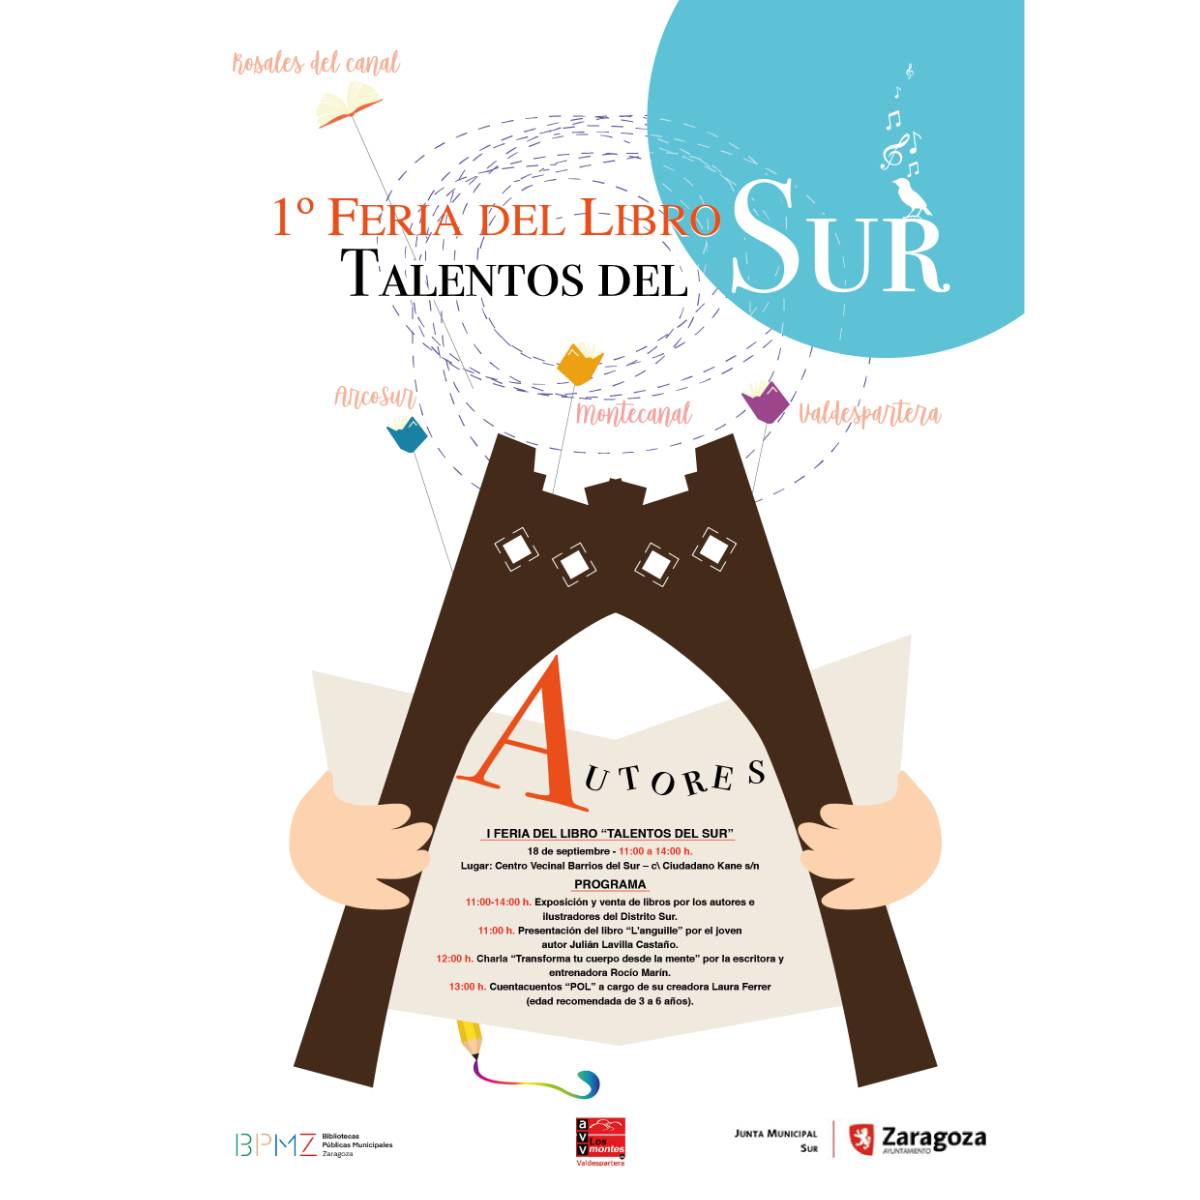 1ª Feria del Libro Talentos del Sur Valdespartera (Zaragoza)